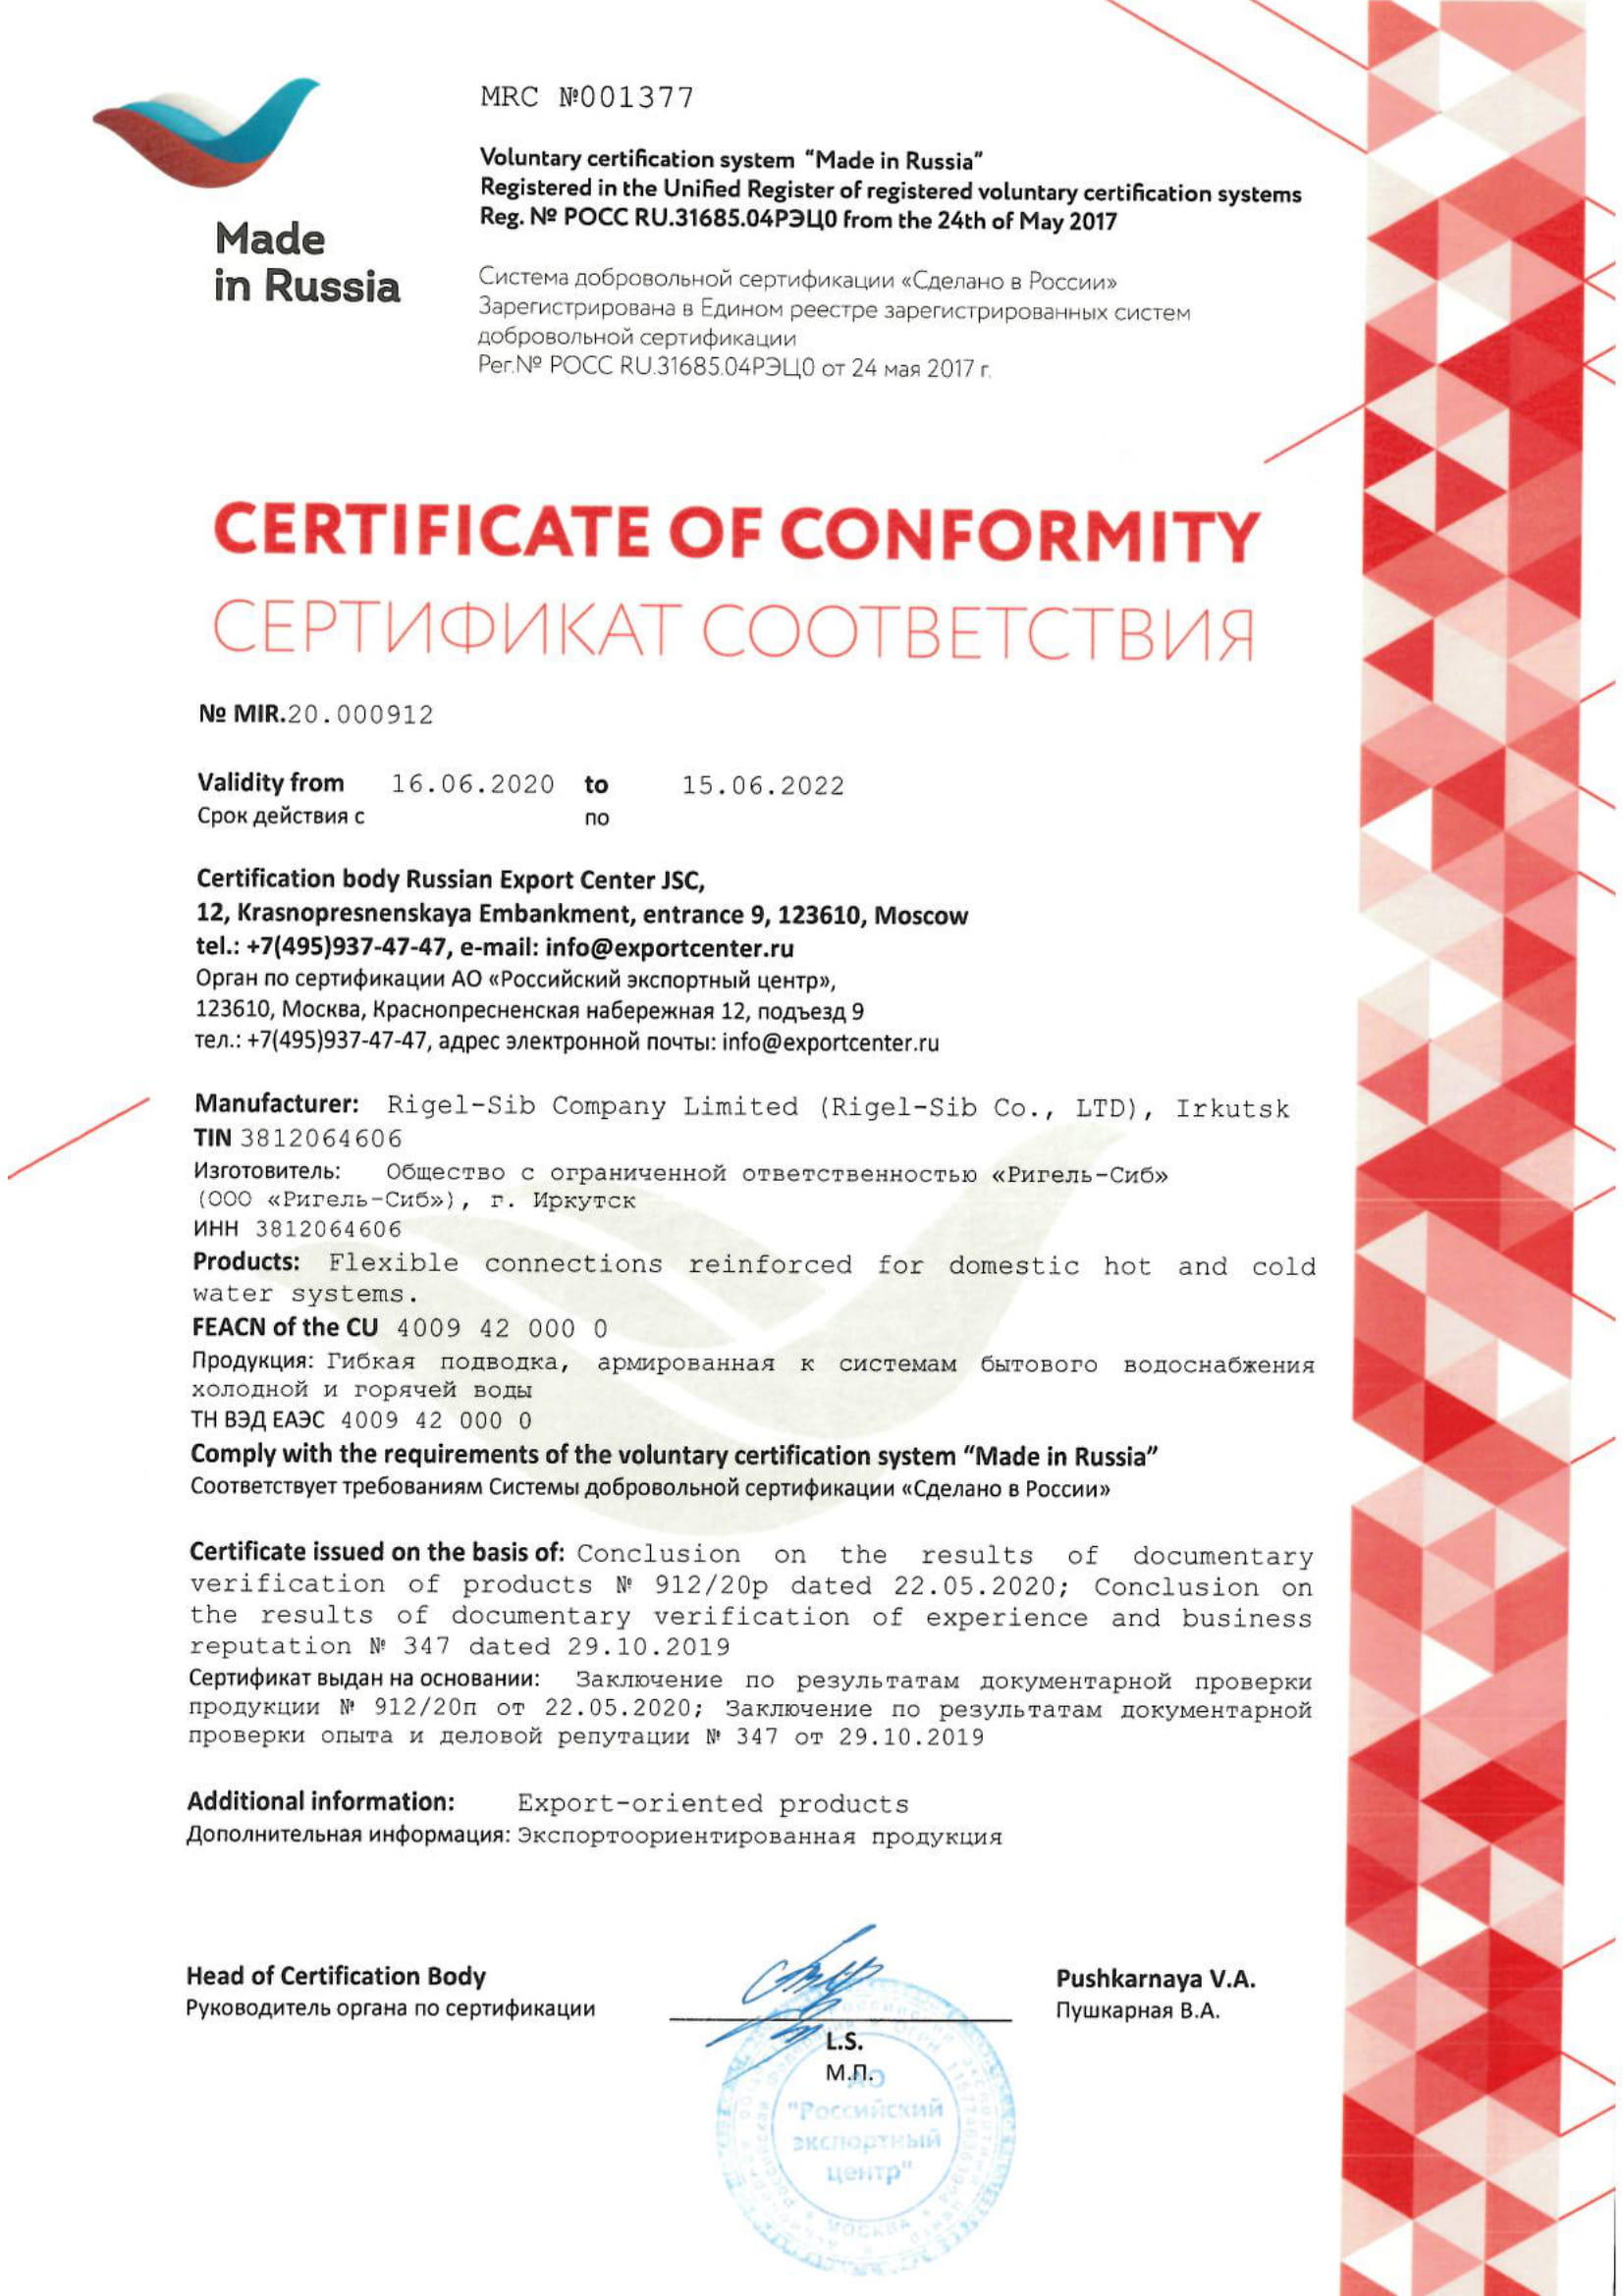 Сертификат соответствия РигельСиб